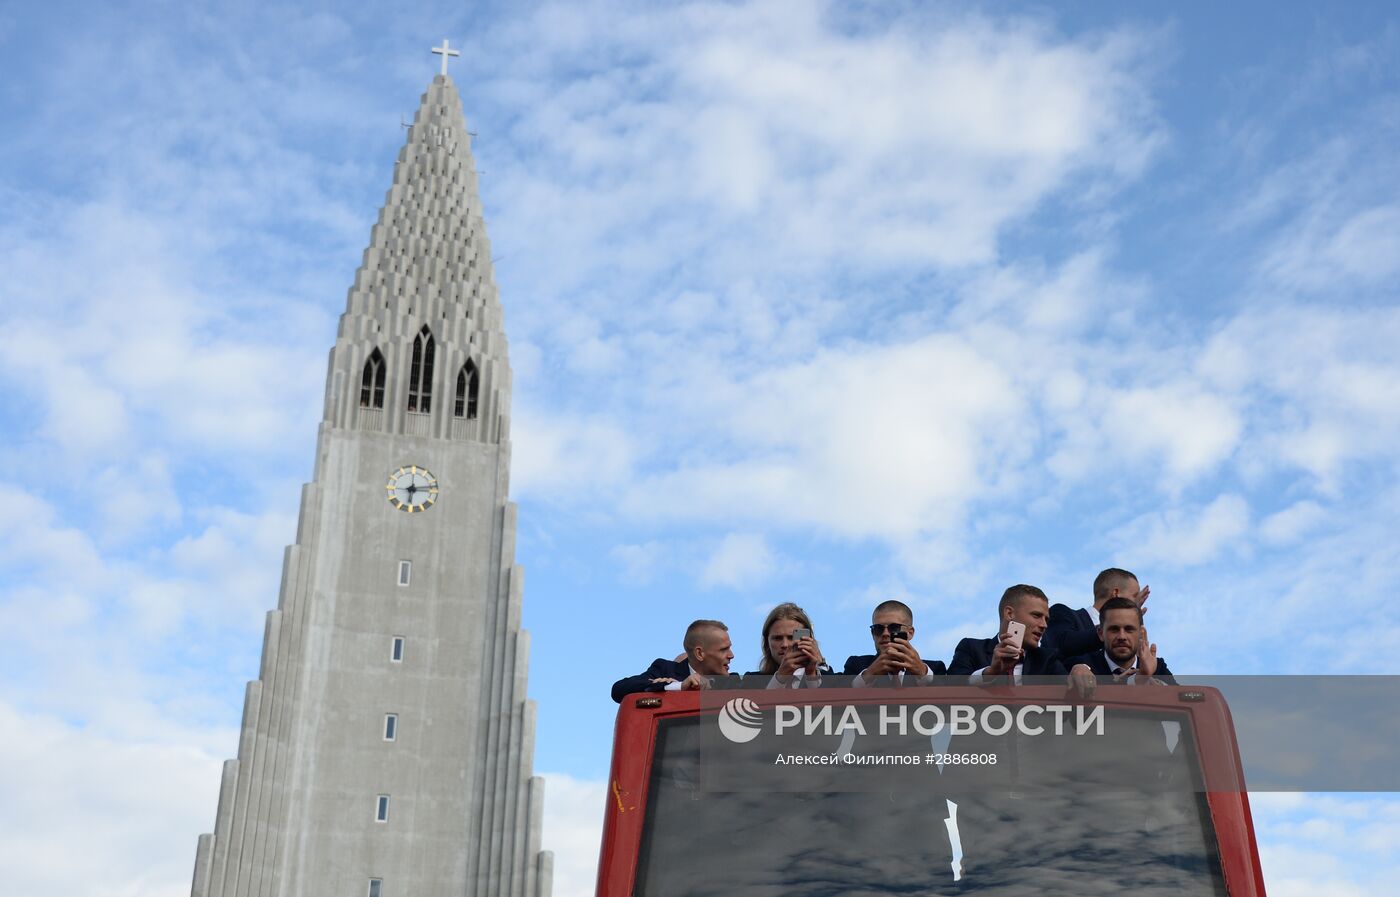 Встреча футболистов сборной Исландии с Евро-2016